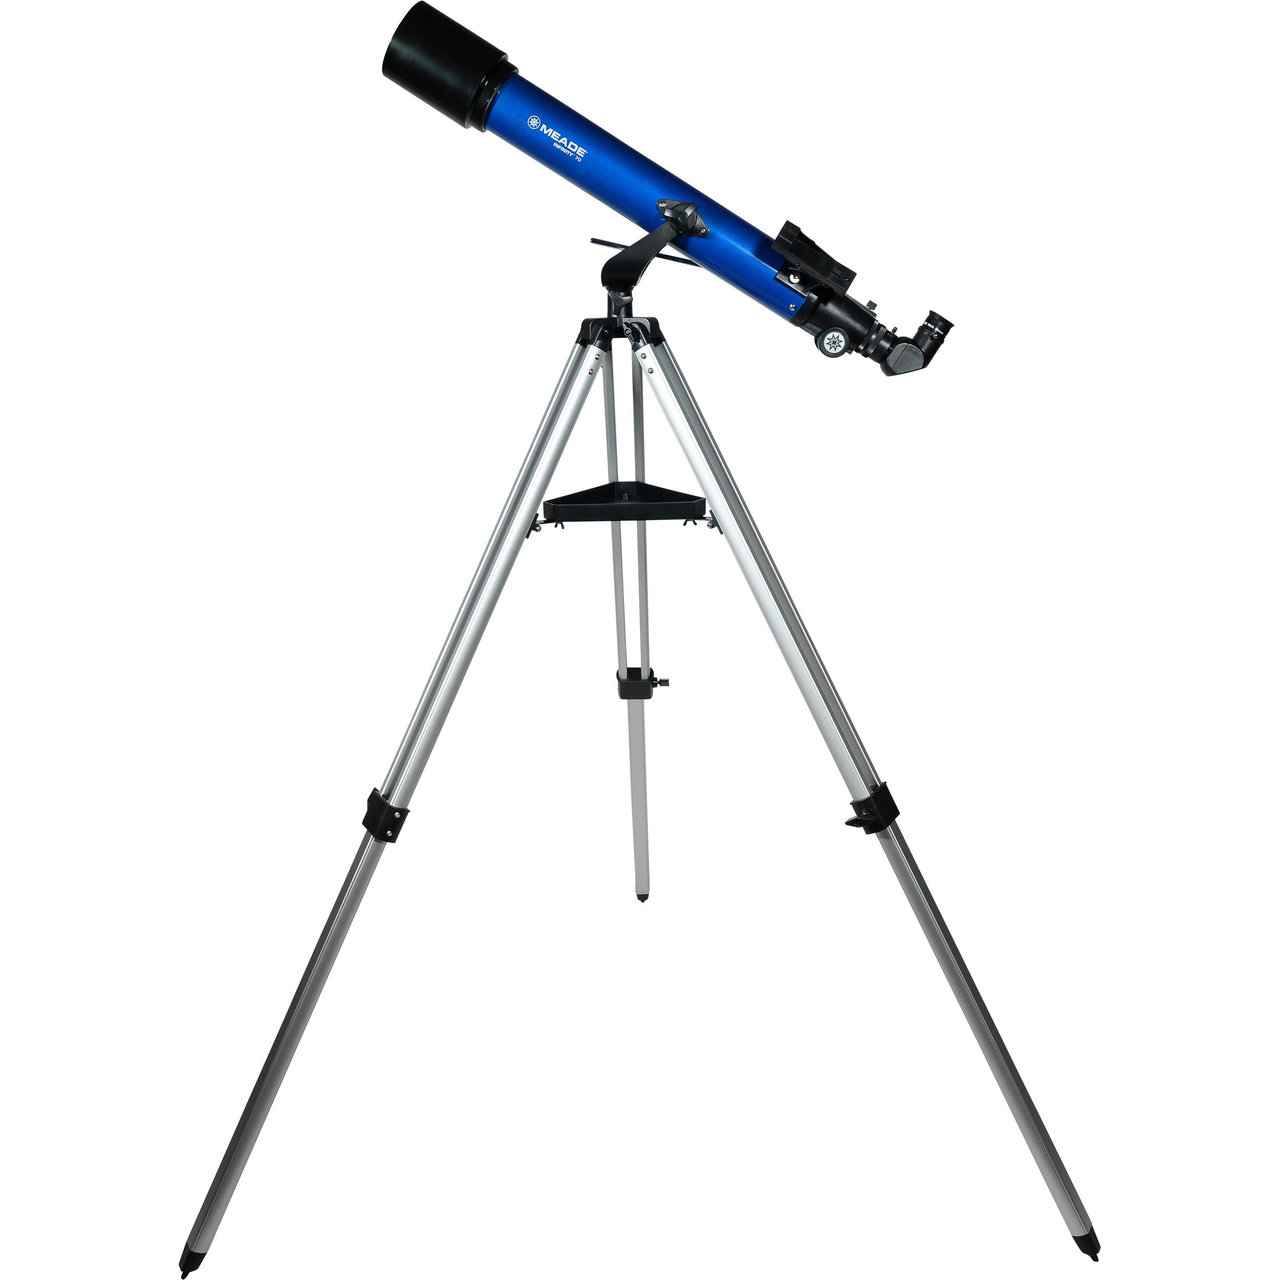 Telescopios: una ‘mirada’ a las profundidades del cielo